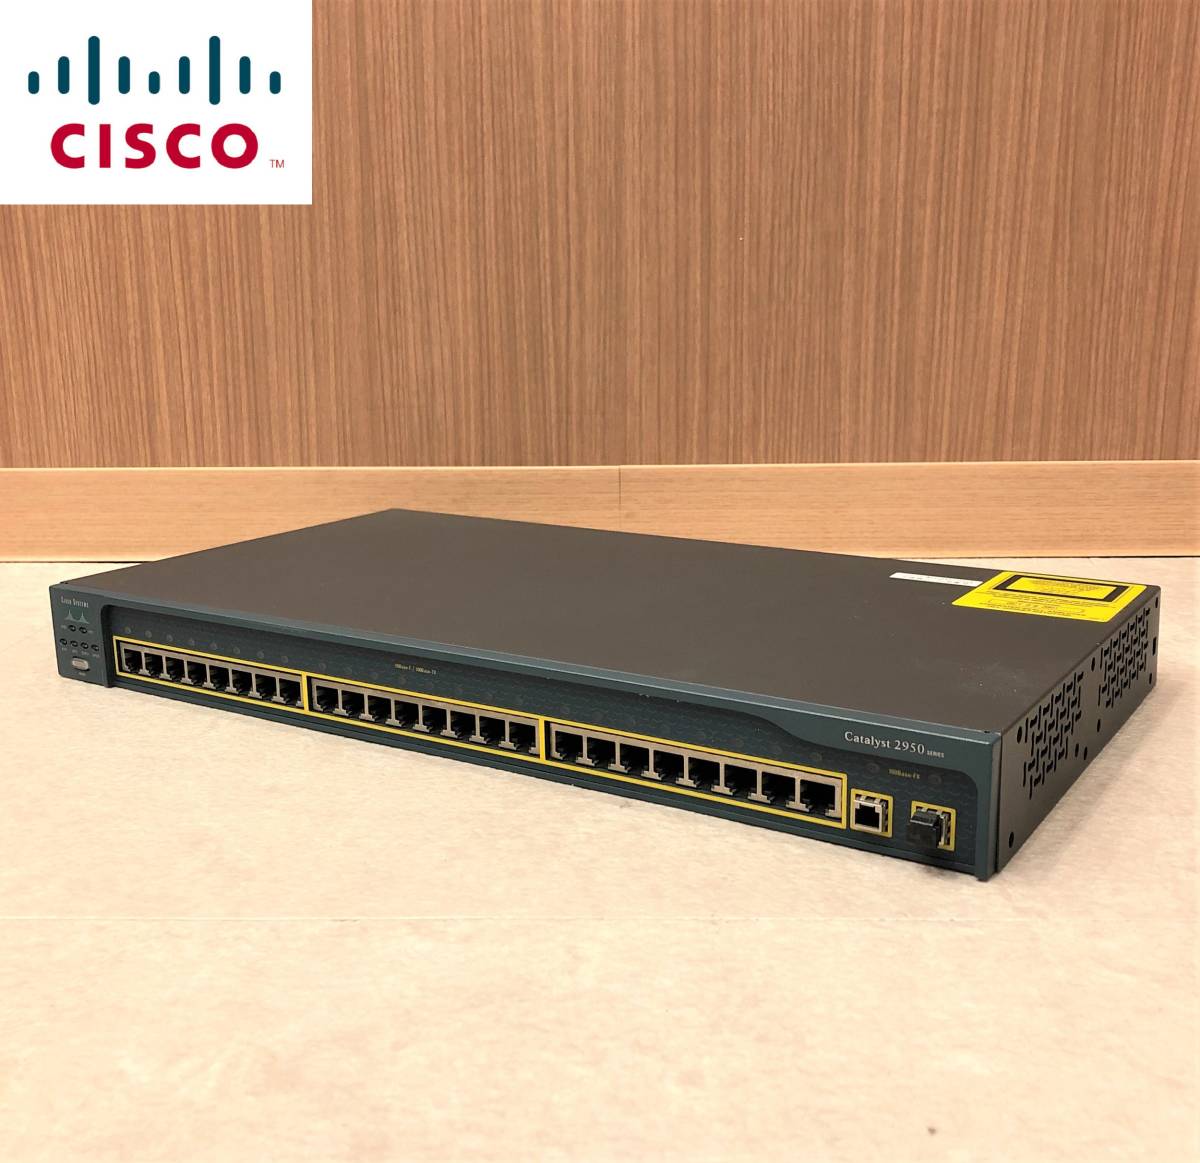 Cisco シスコ Catalyst 2950C-24 スイッチ 24ポート